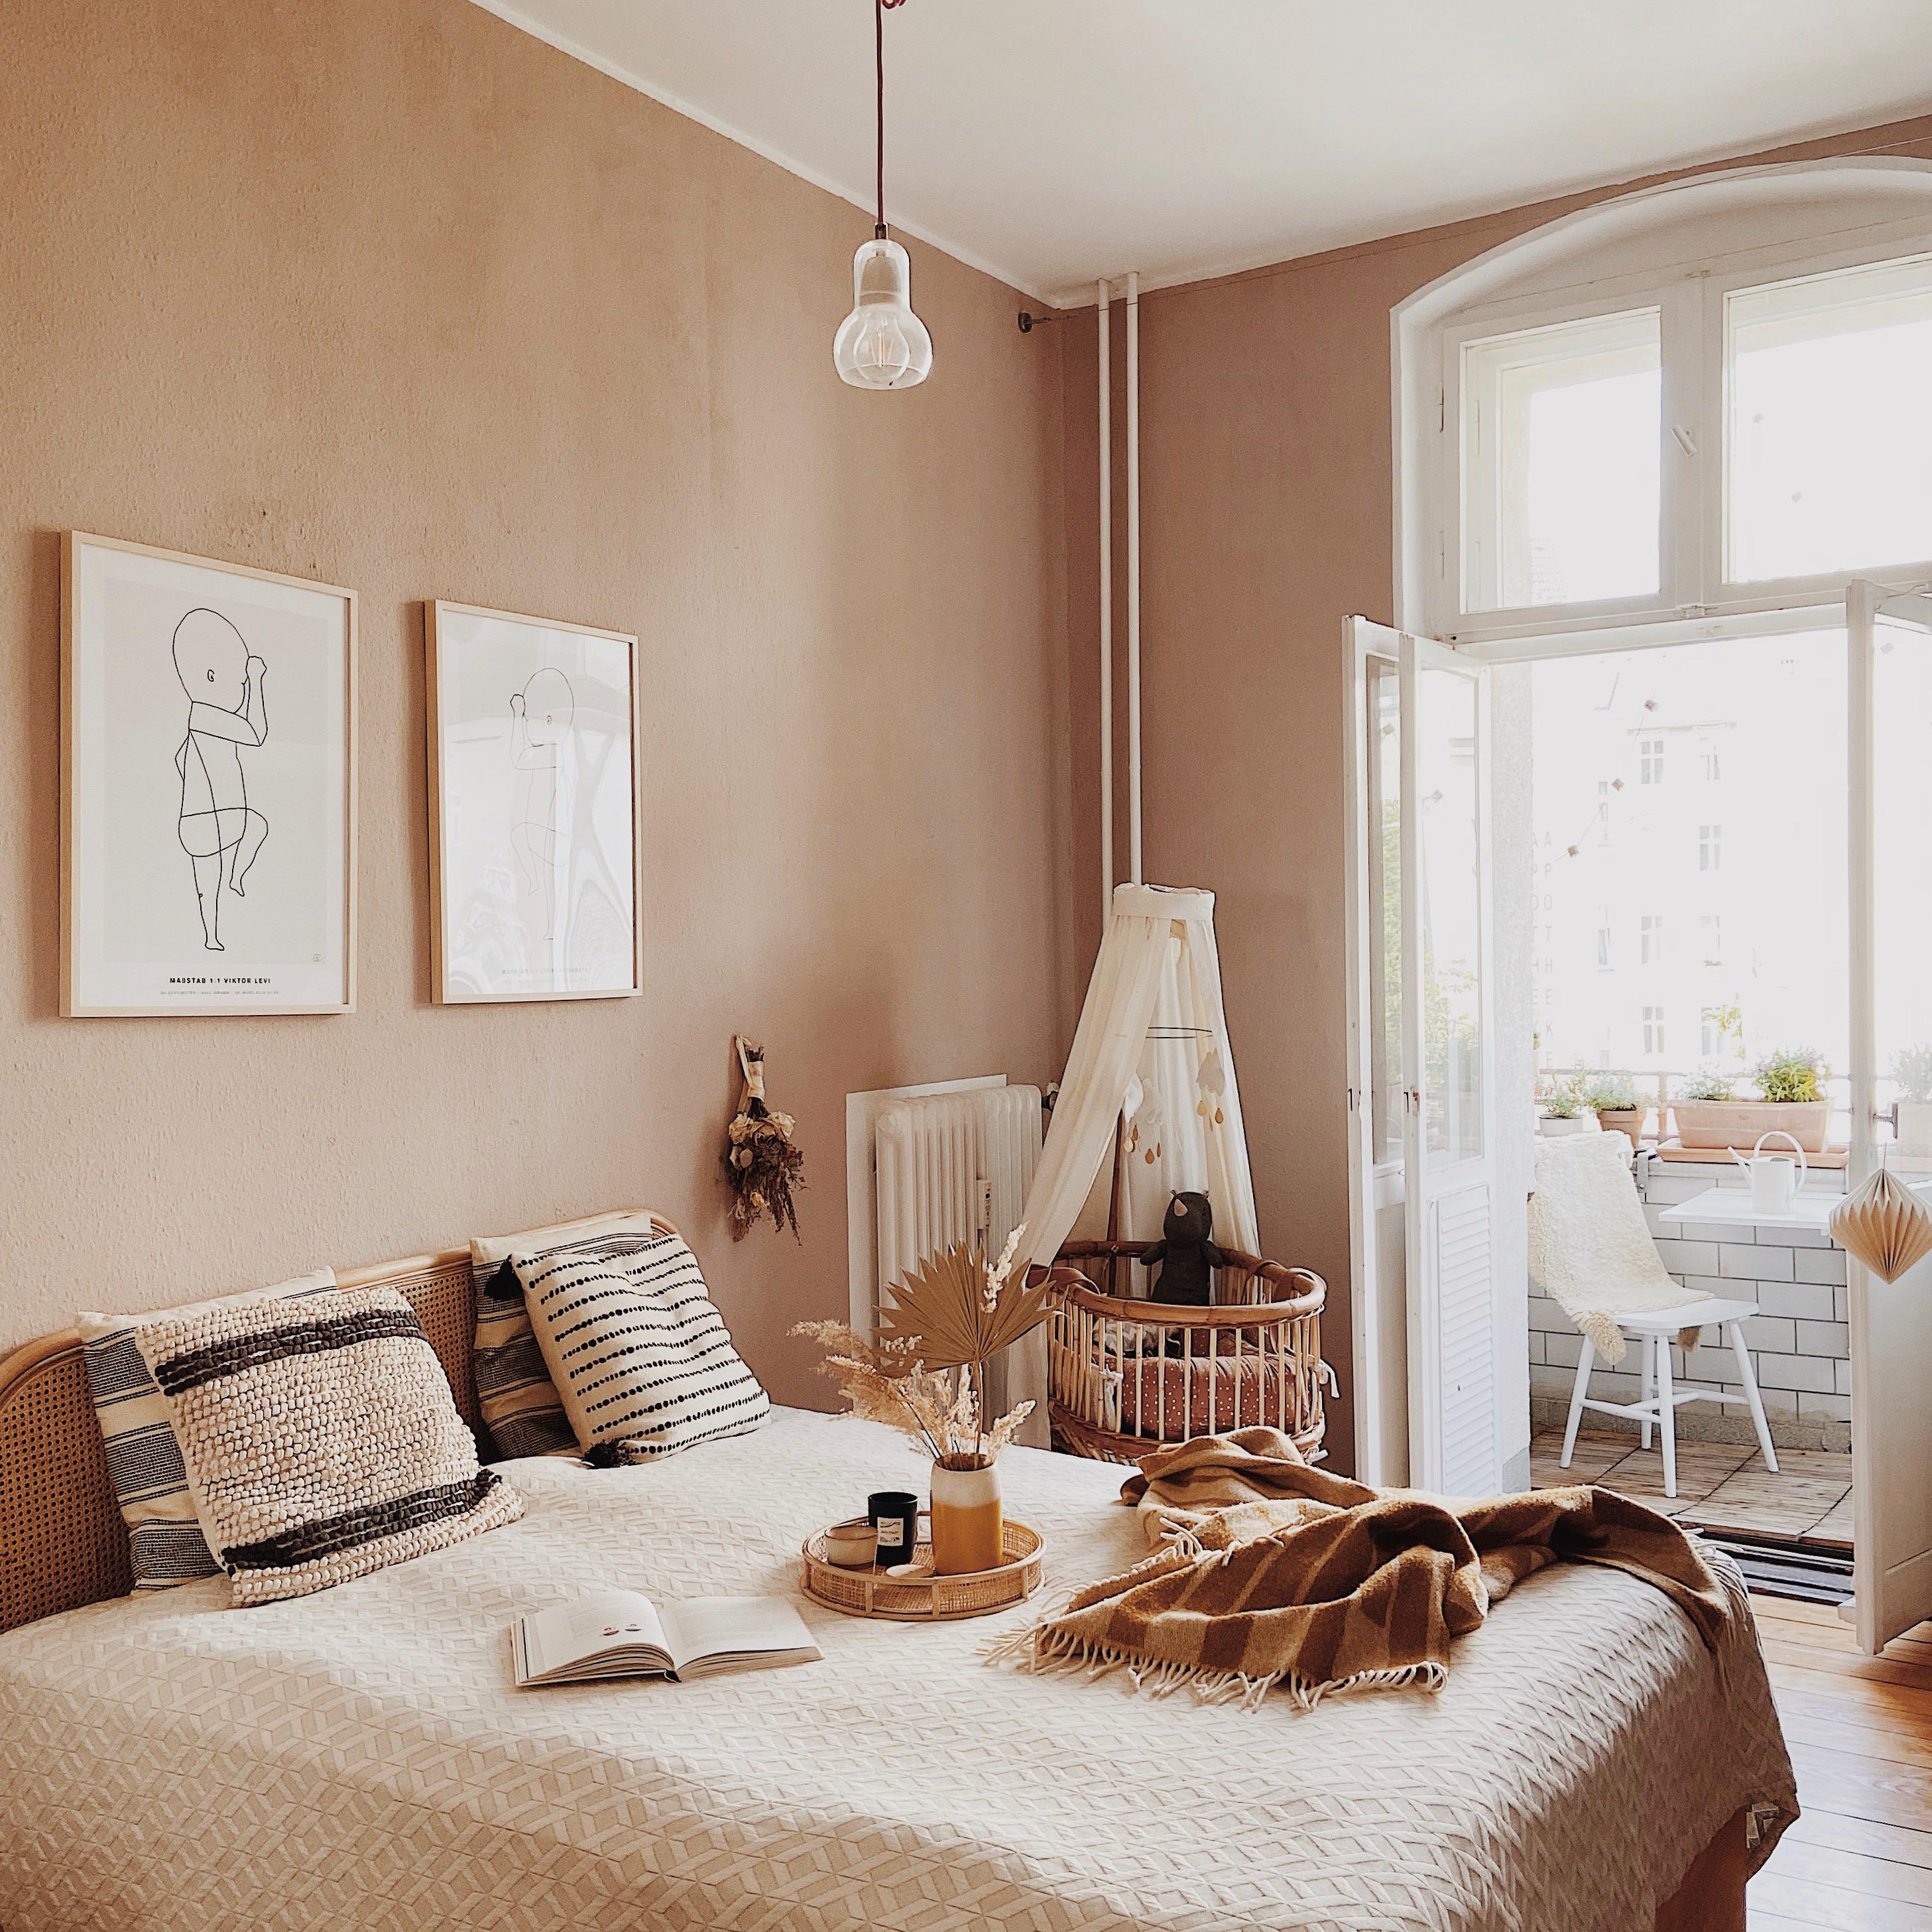 Guten Morgen aus dem Schlafzimmer!
#goodmorning #bedroom #interior #interiordesign #altbauliebe 